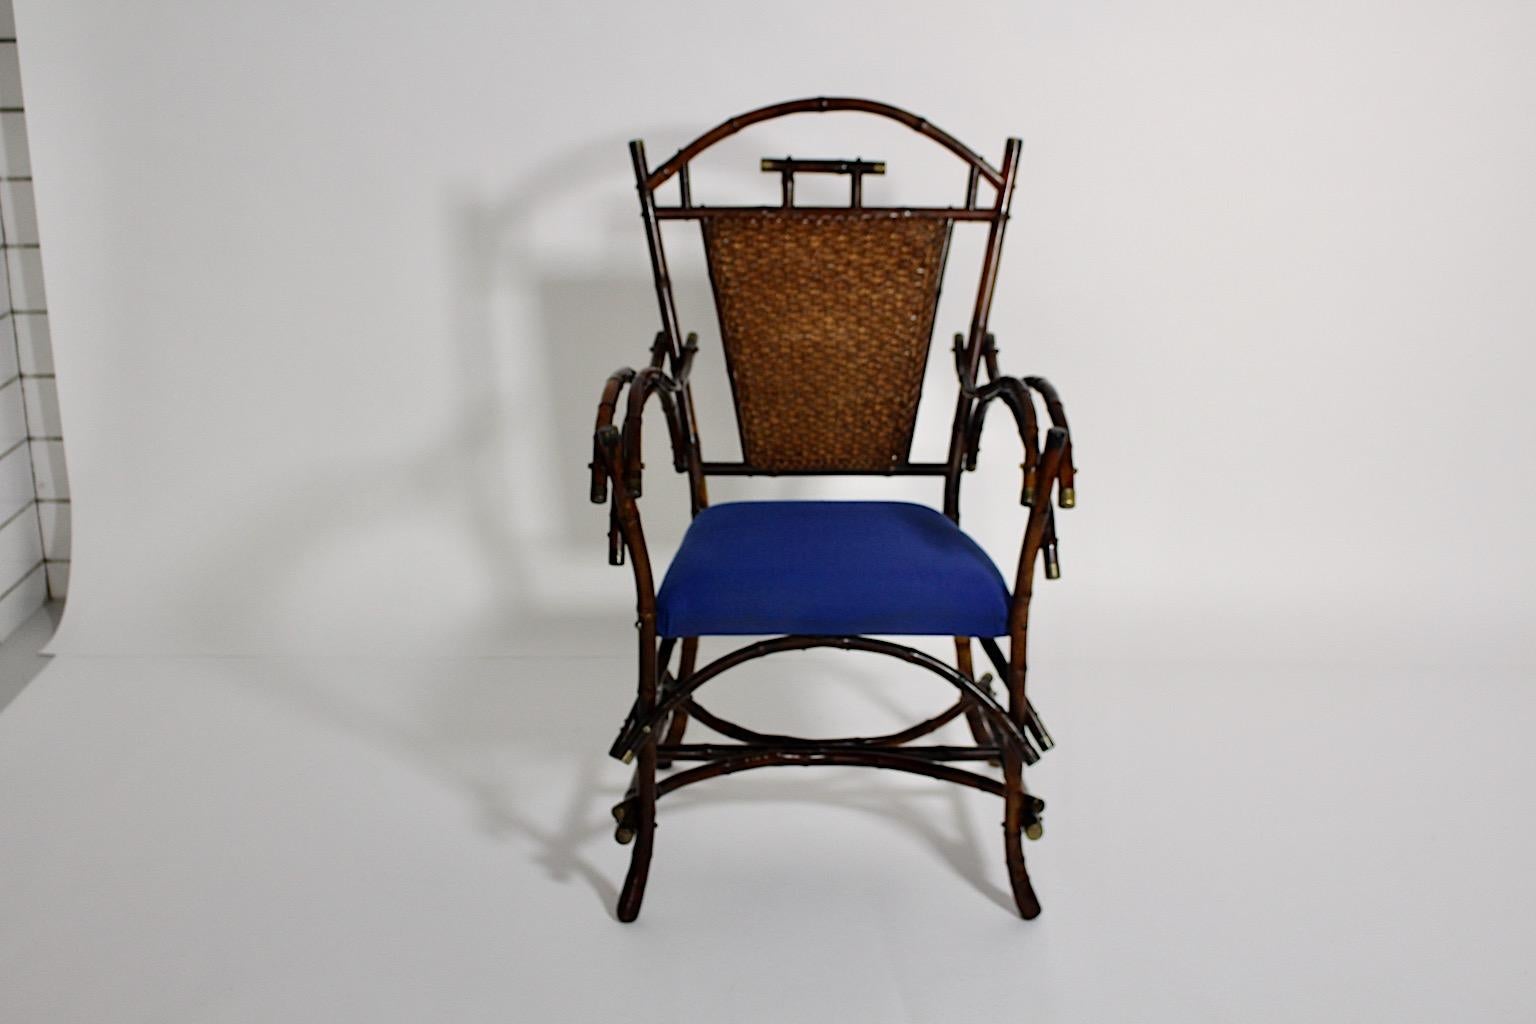 Jugendstil Vintage Sessel oder Beistellstuhl aus Rattan Bambus entworfen und hergestellt um 1915 Wien.
Ein hochwertiger Sessel oder Beistellstuhl aus gebogenem Bambus mit vernickelten Endstücken und einem königsblau gepolsterten Sitz aus